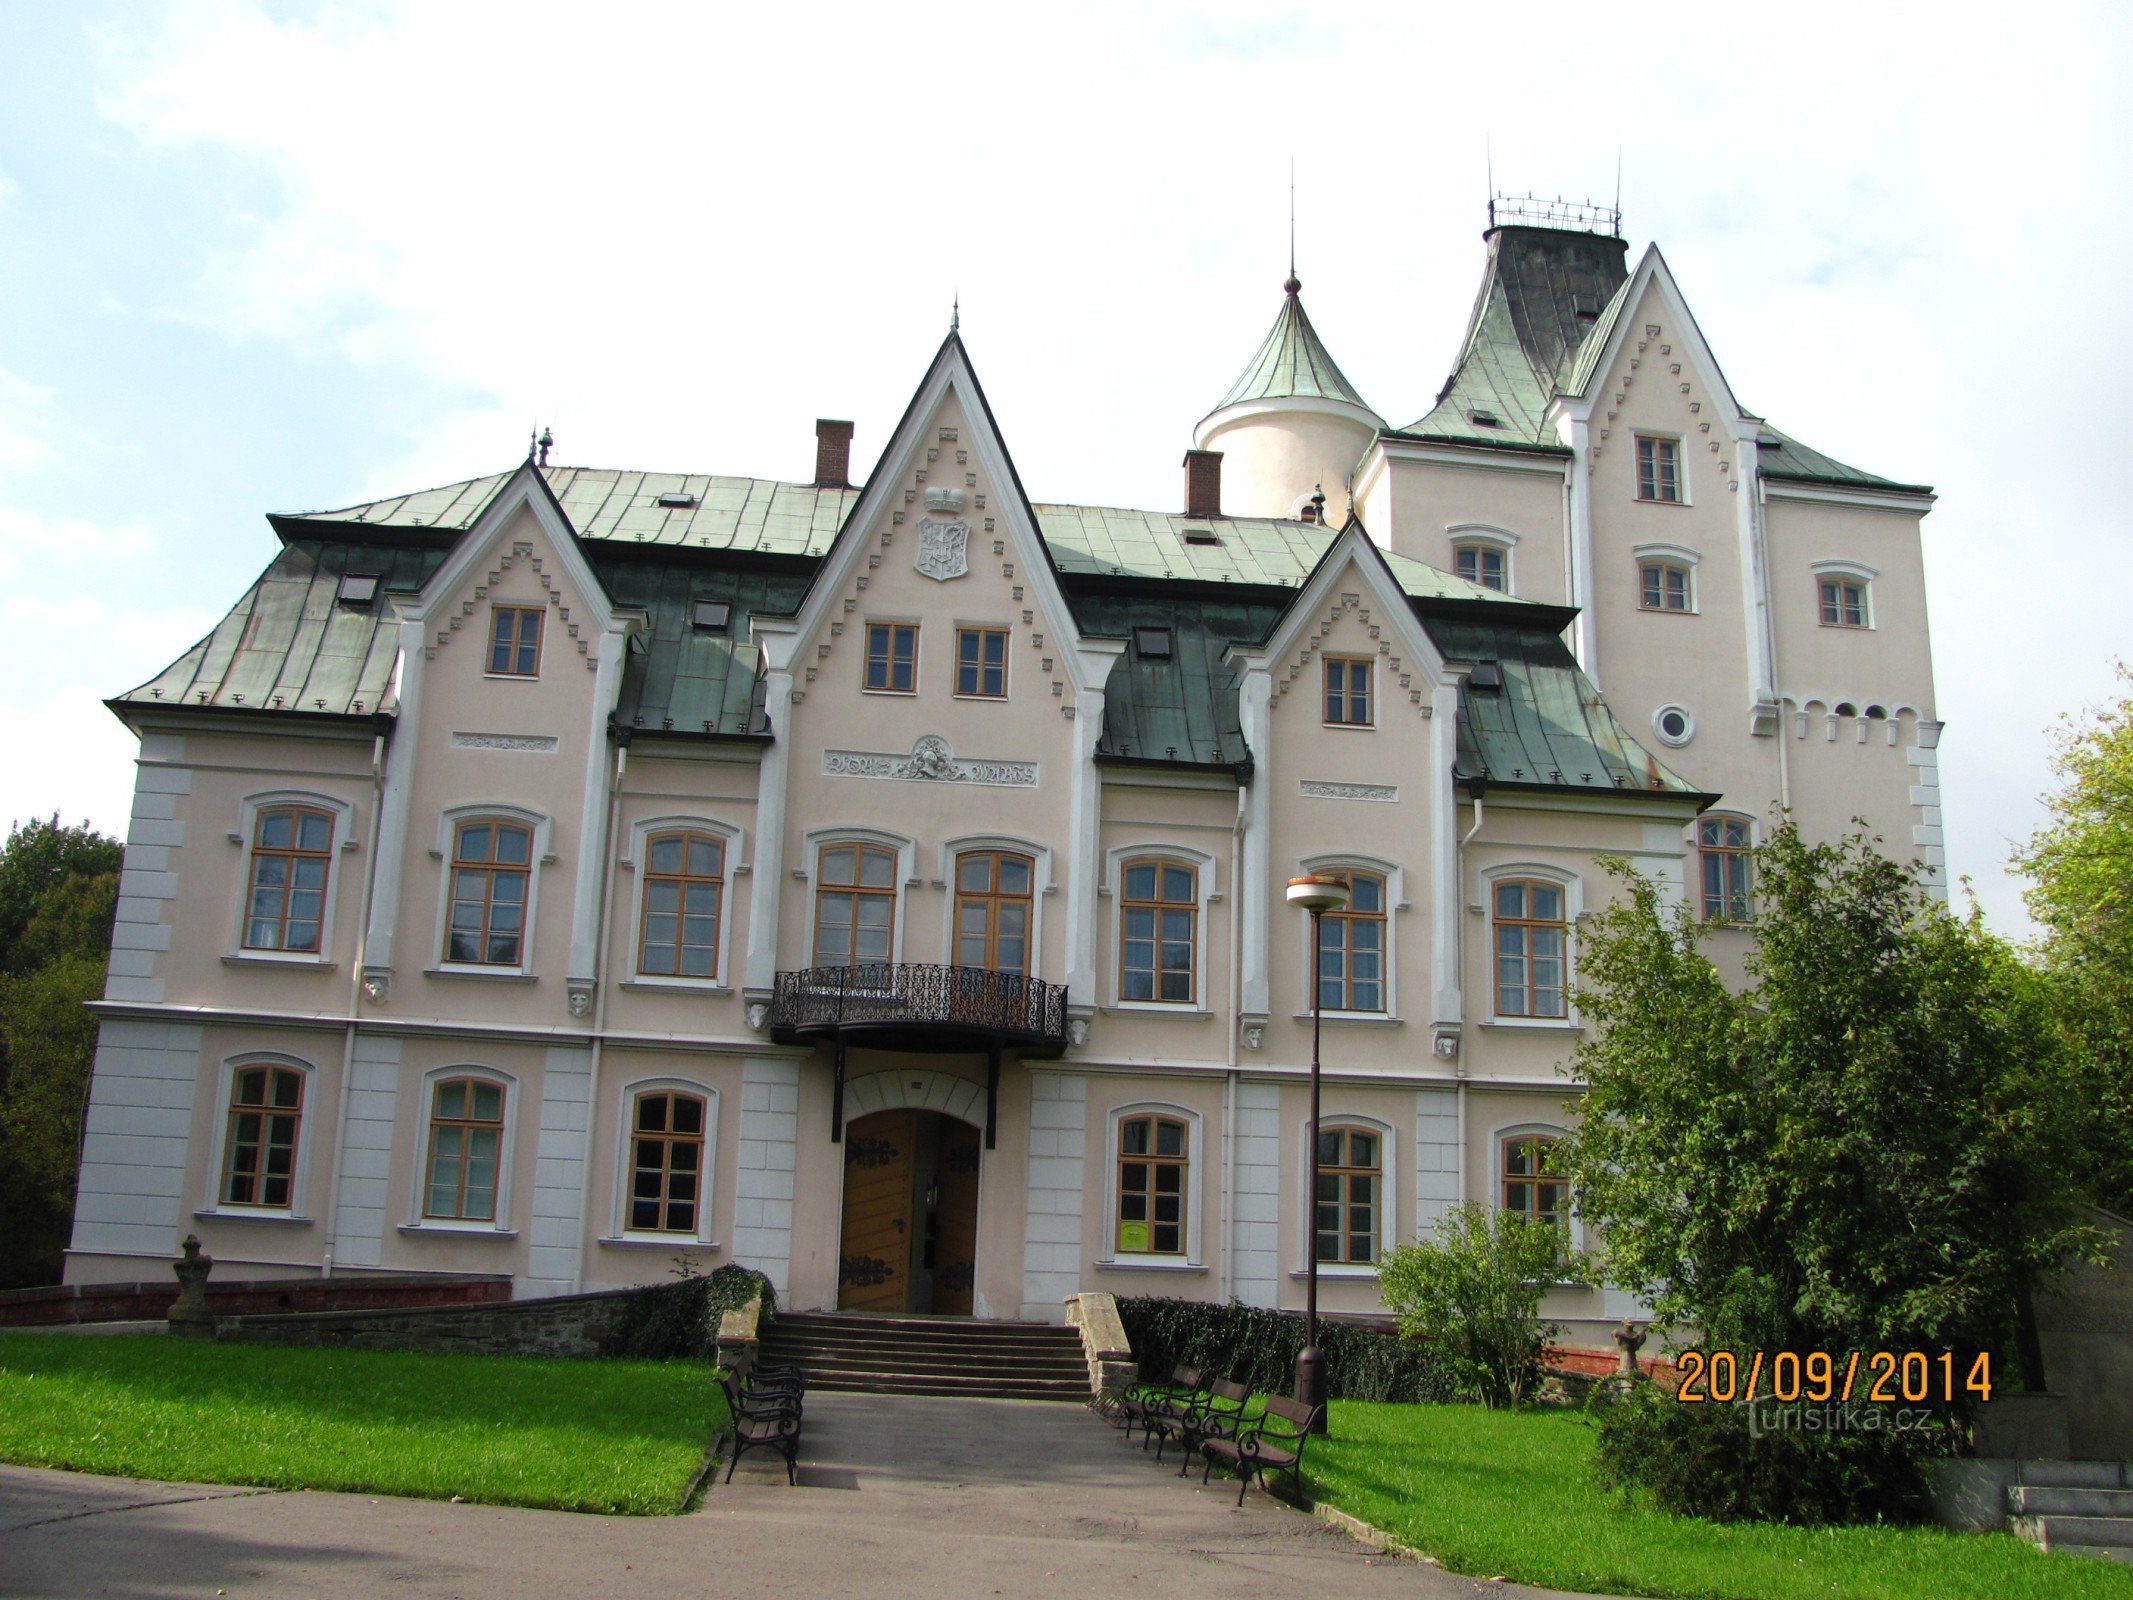 Studénkaのワゴン博物館